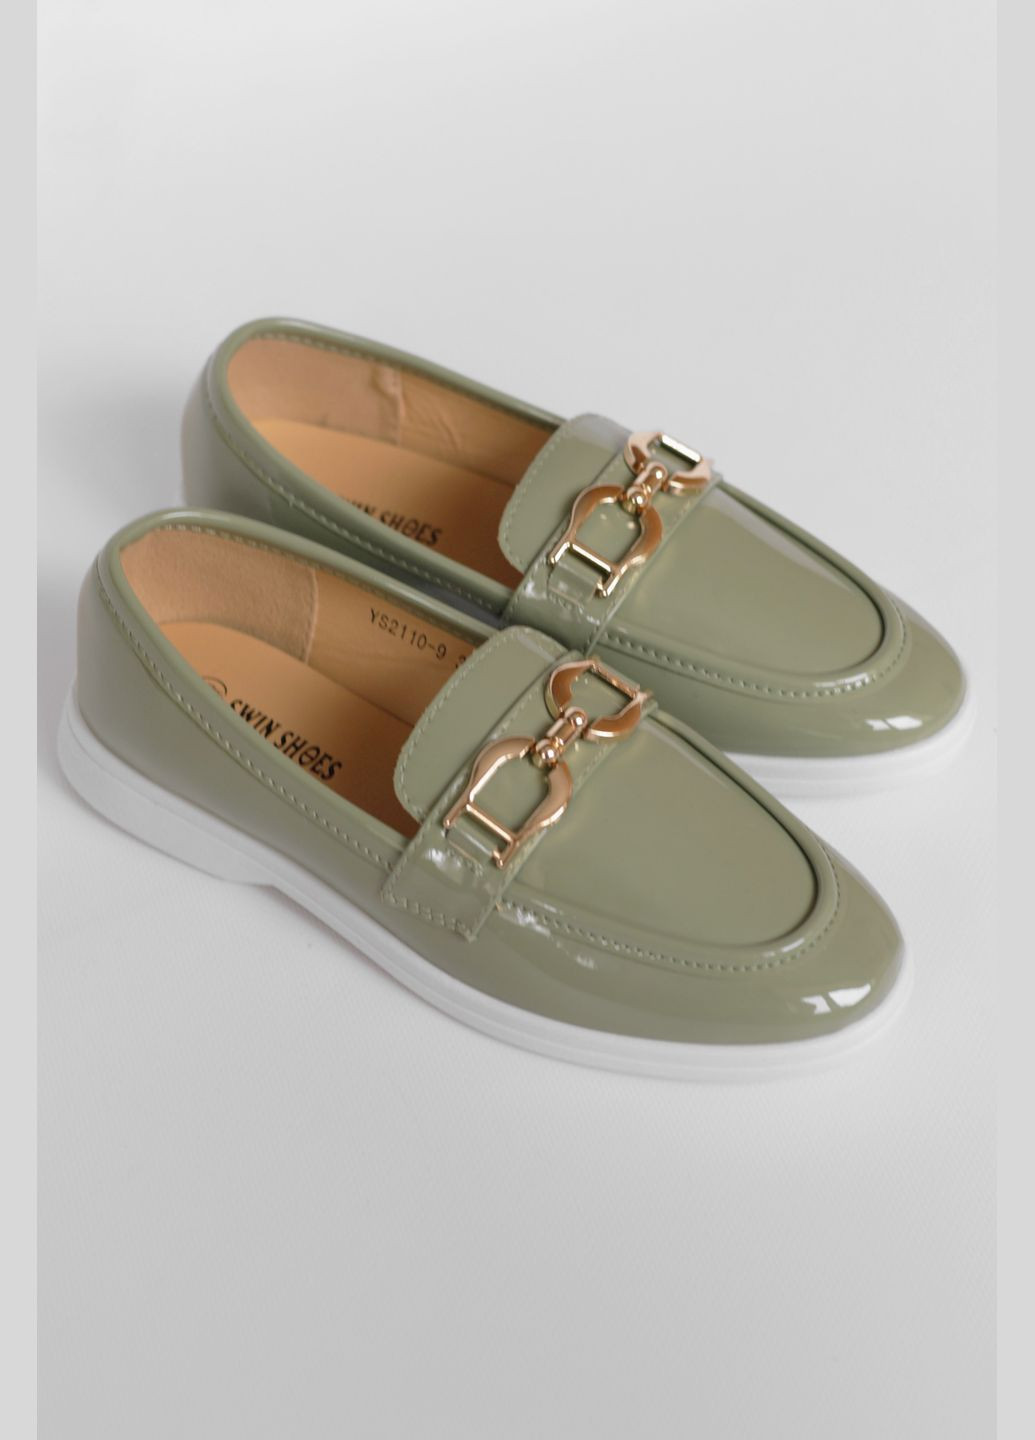 Туфли-лоферы женские оливкового цвета Let's Shop с цепочками